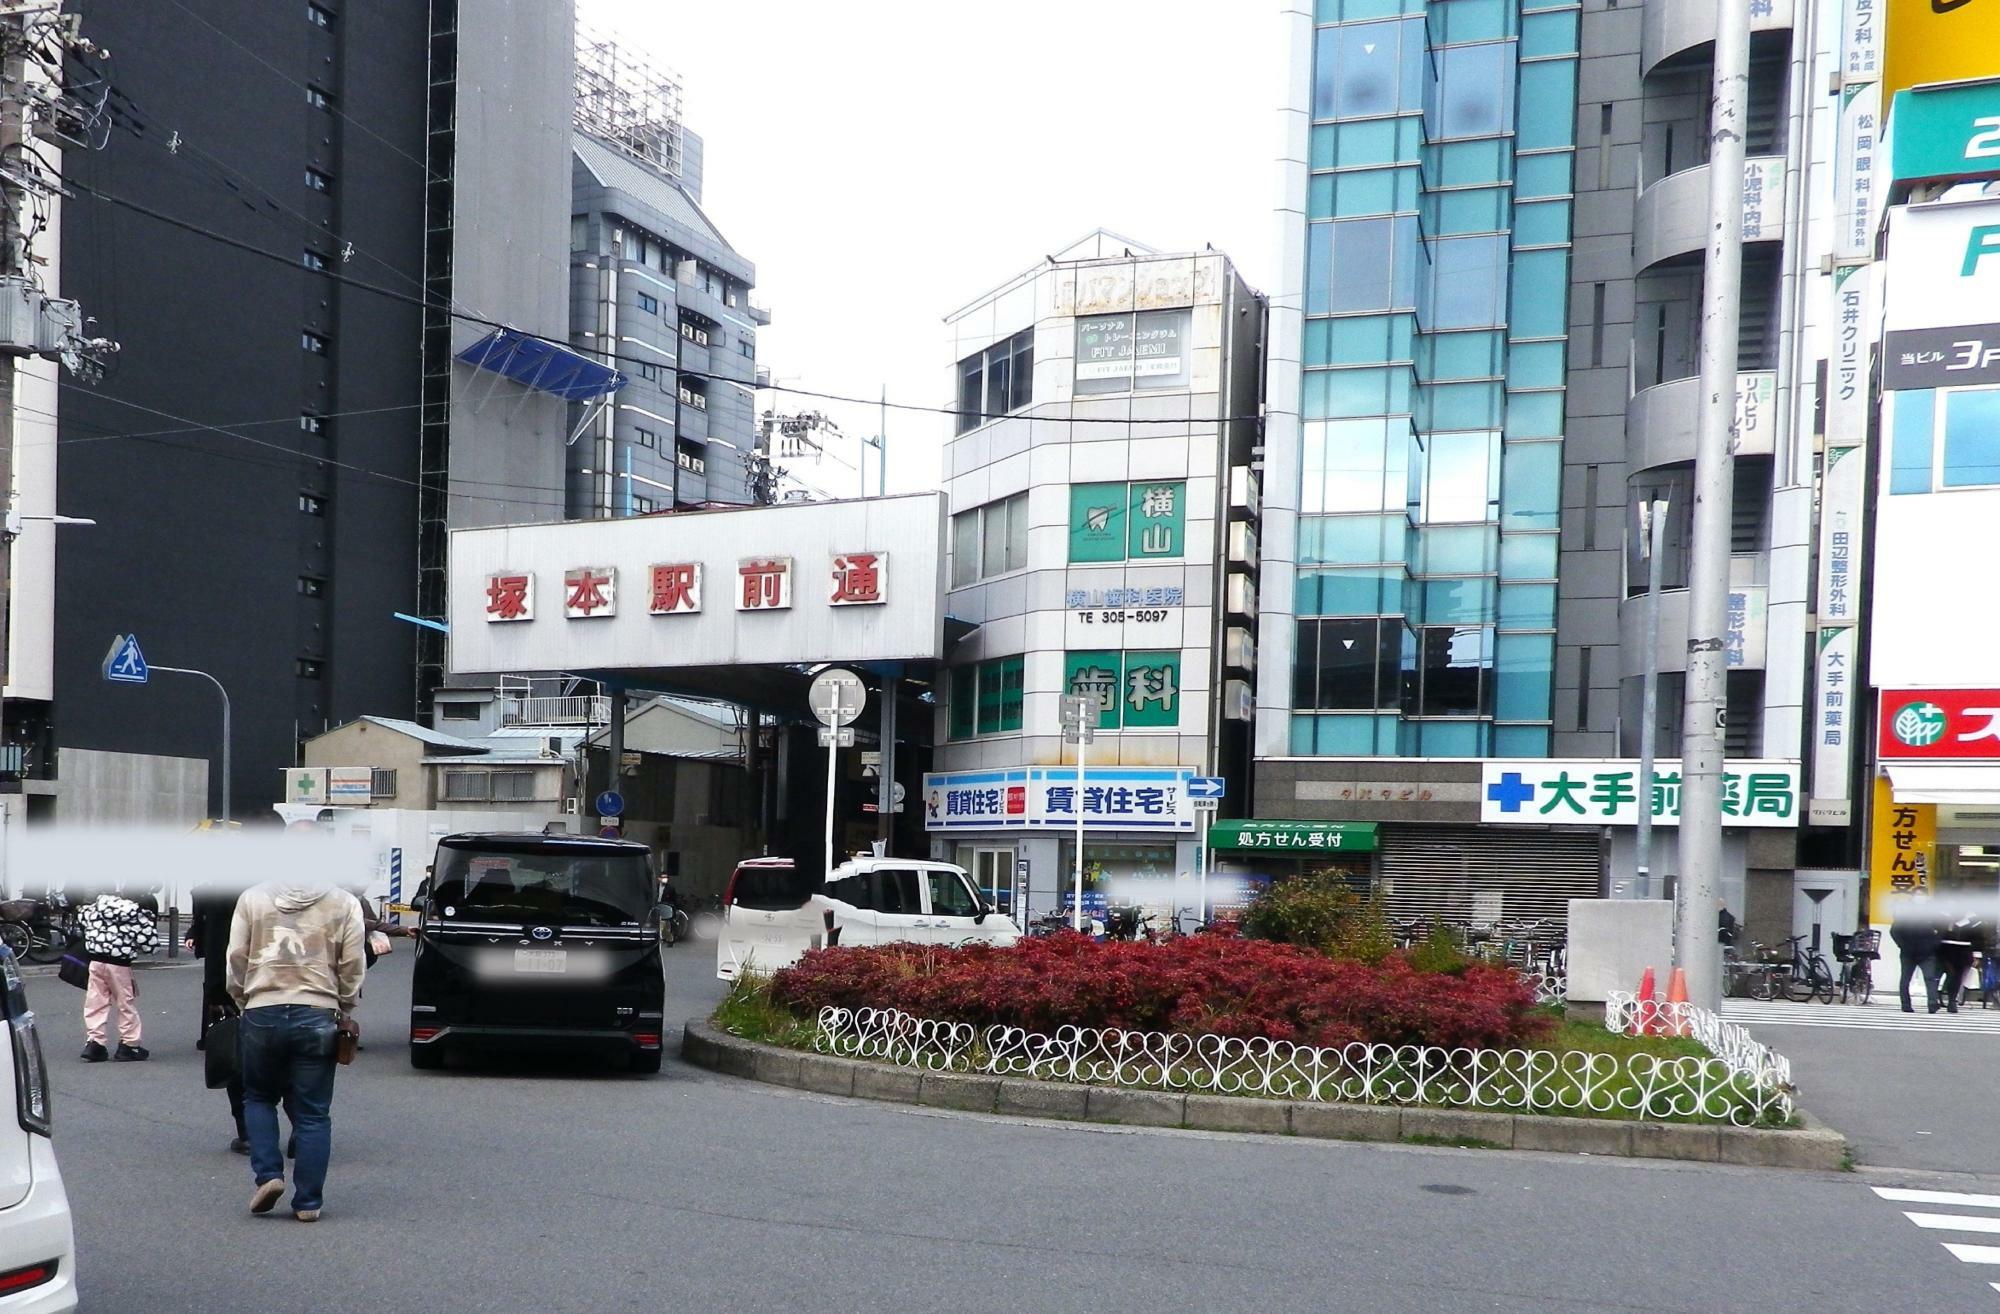 JR塚本駅東口を出てすぐにある「塚本駅前通商店街」。